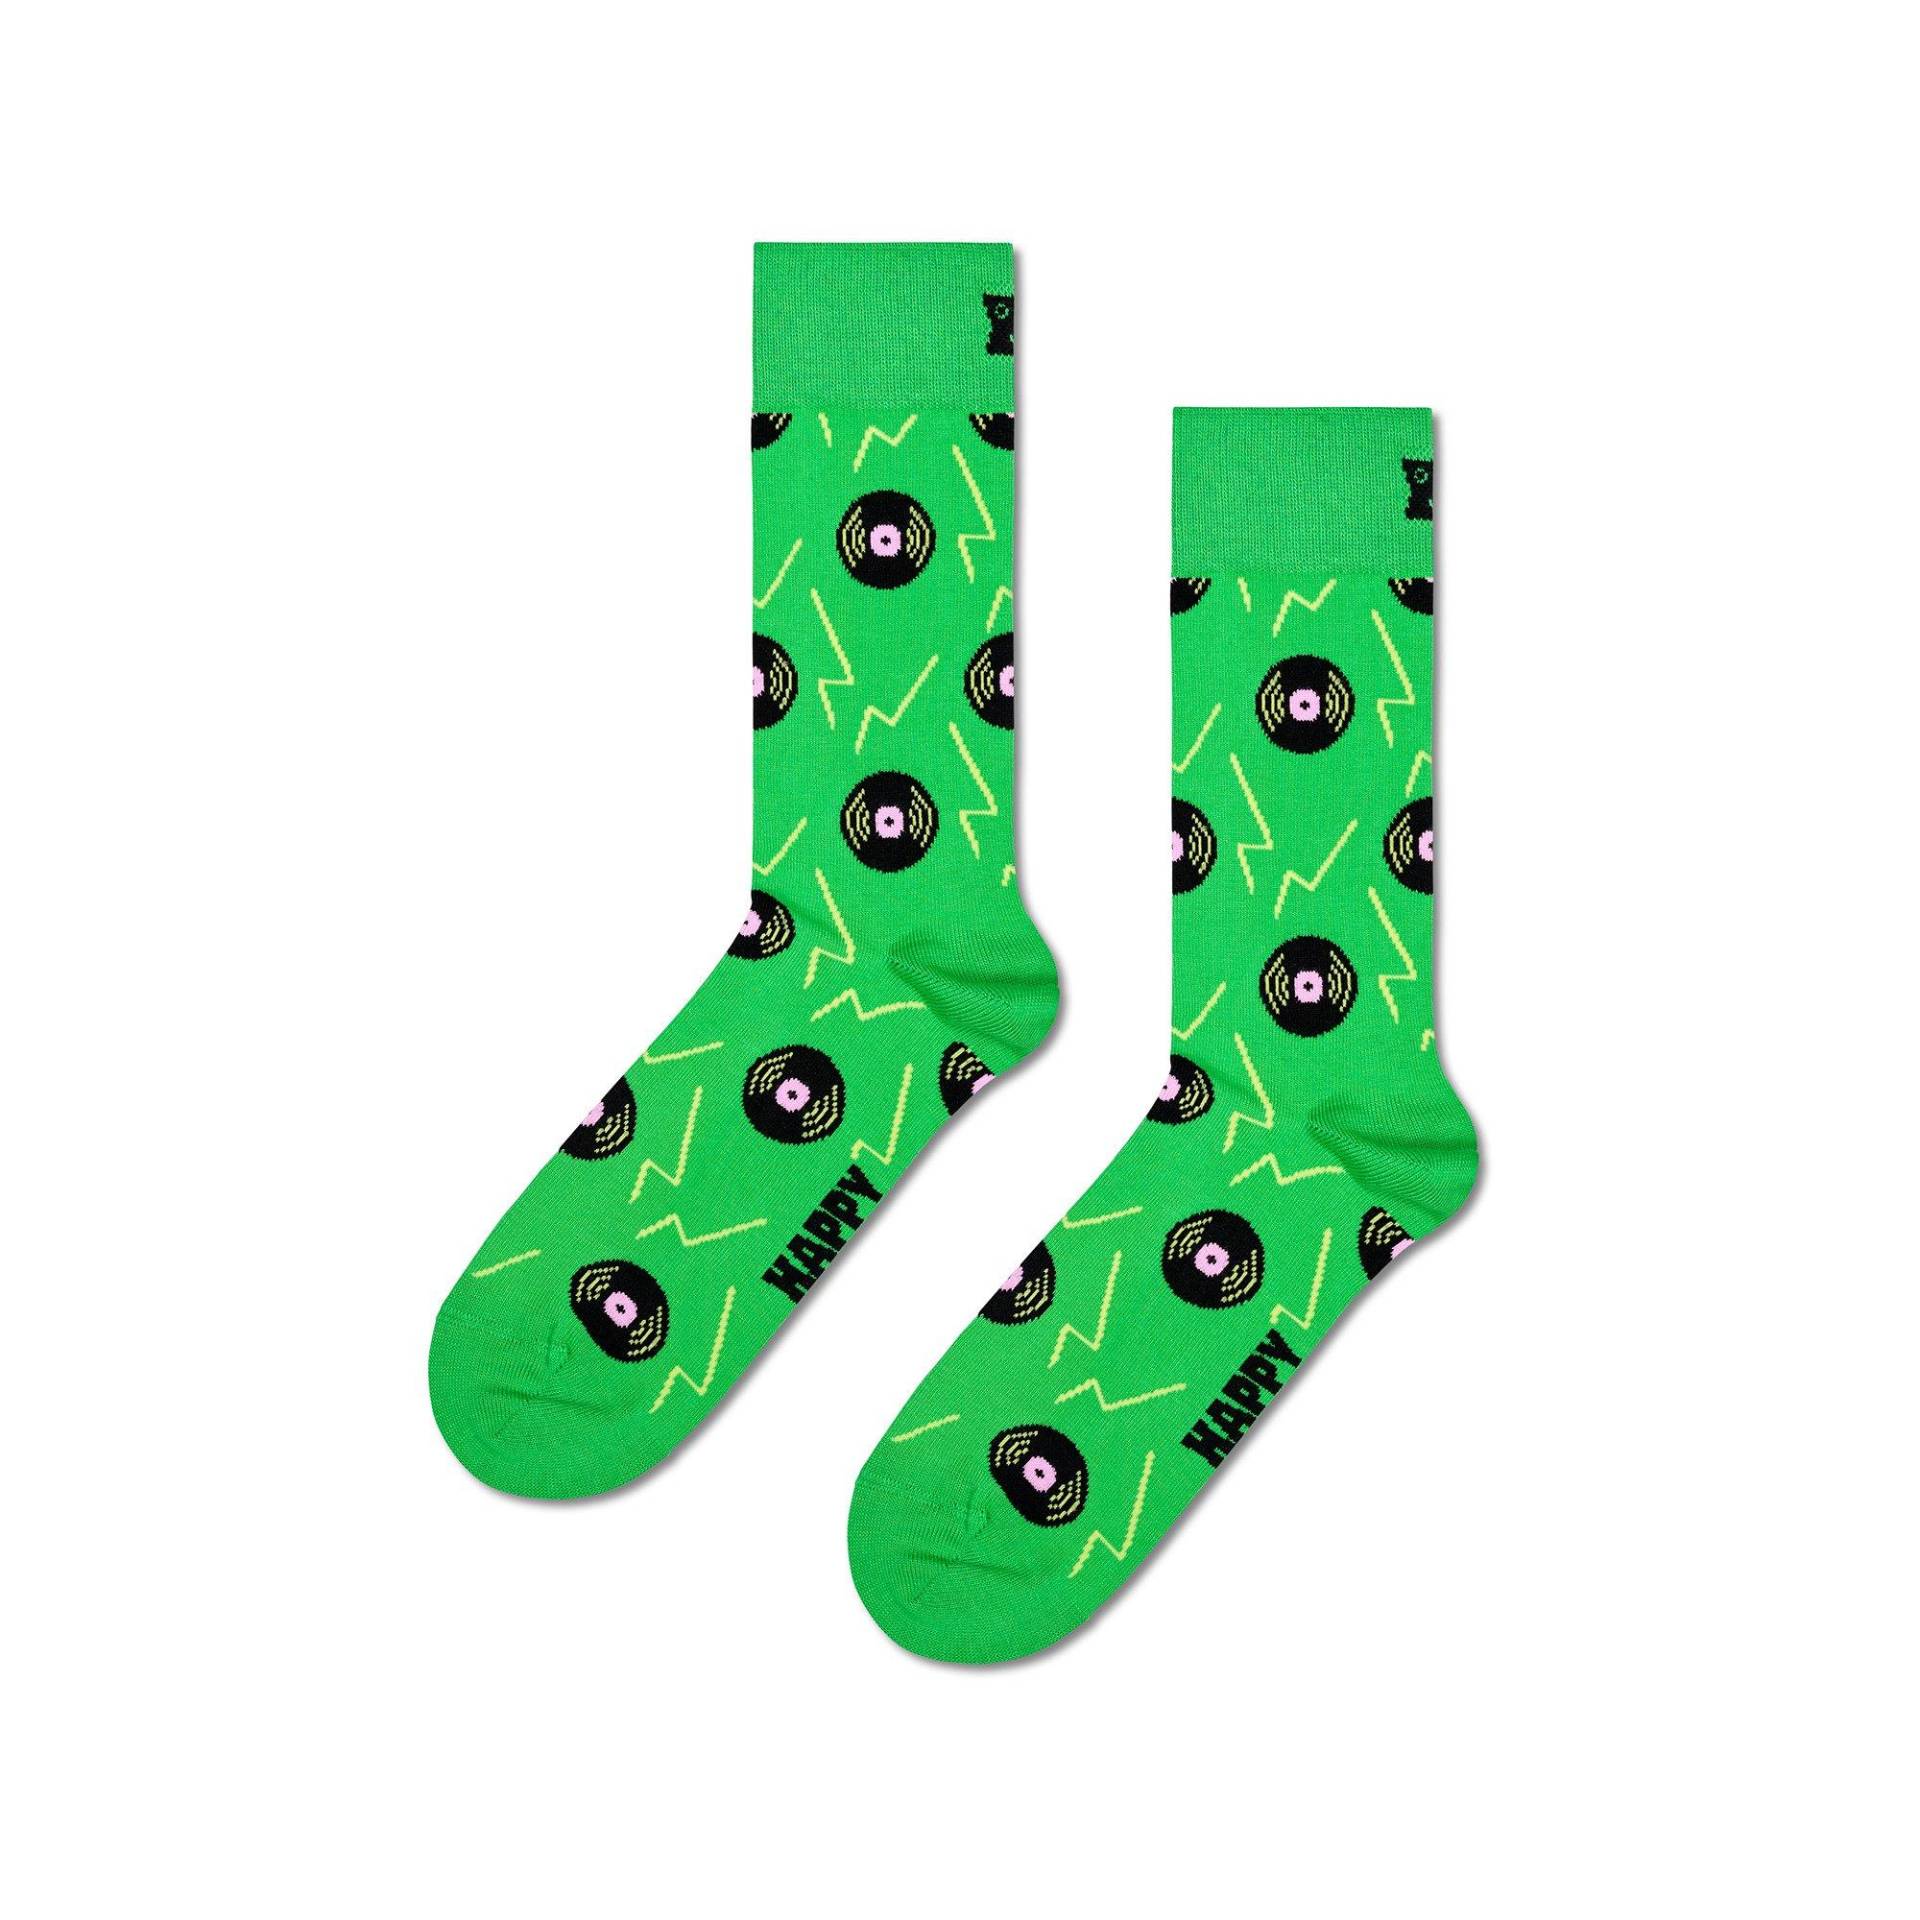 Wadenlange Socken Herren Grün 41/46 von Happy Socks